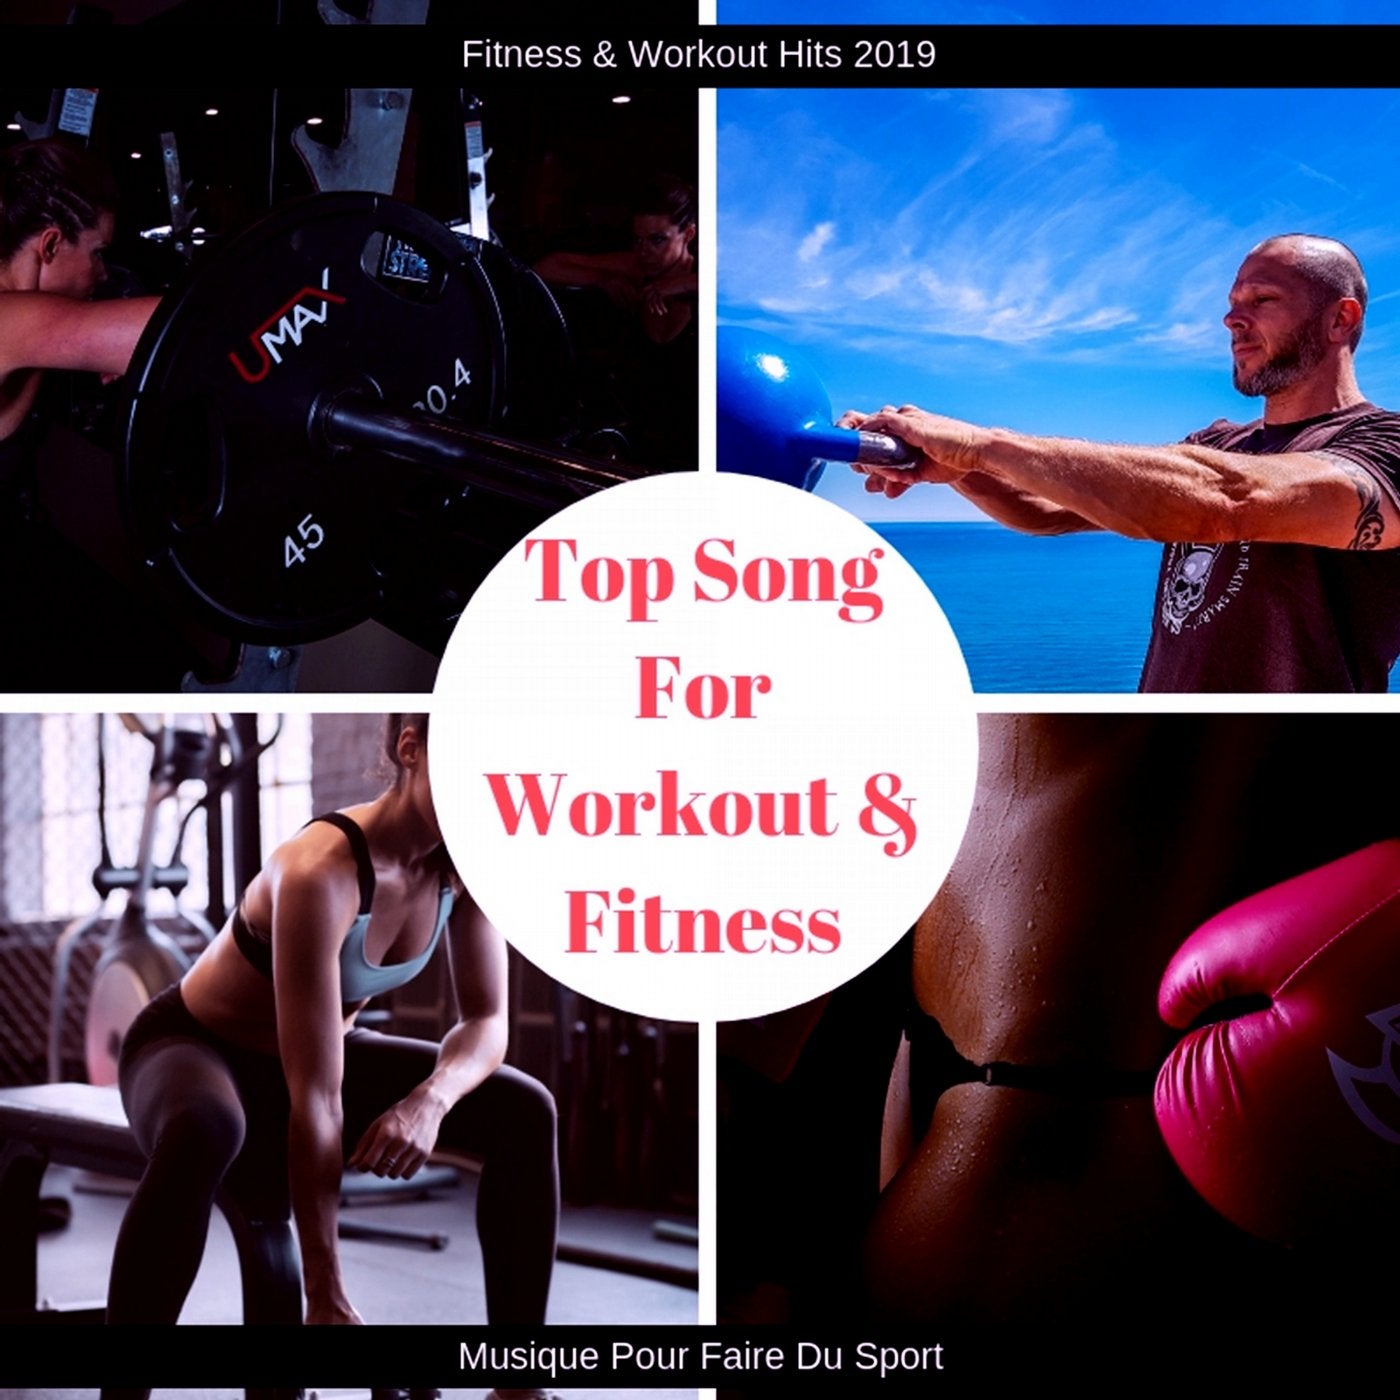 Top Song for Workout & Fitness (Musique Pour Faire Du Sport)